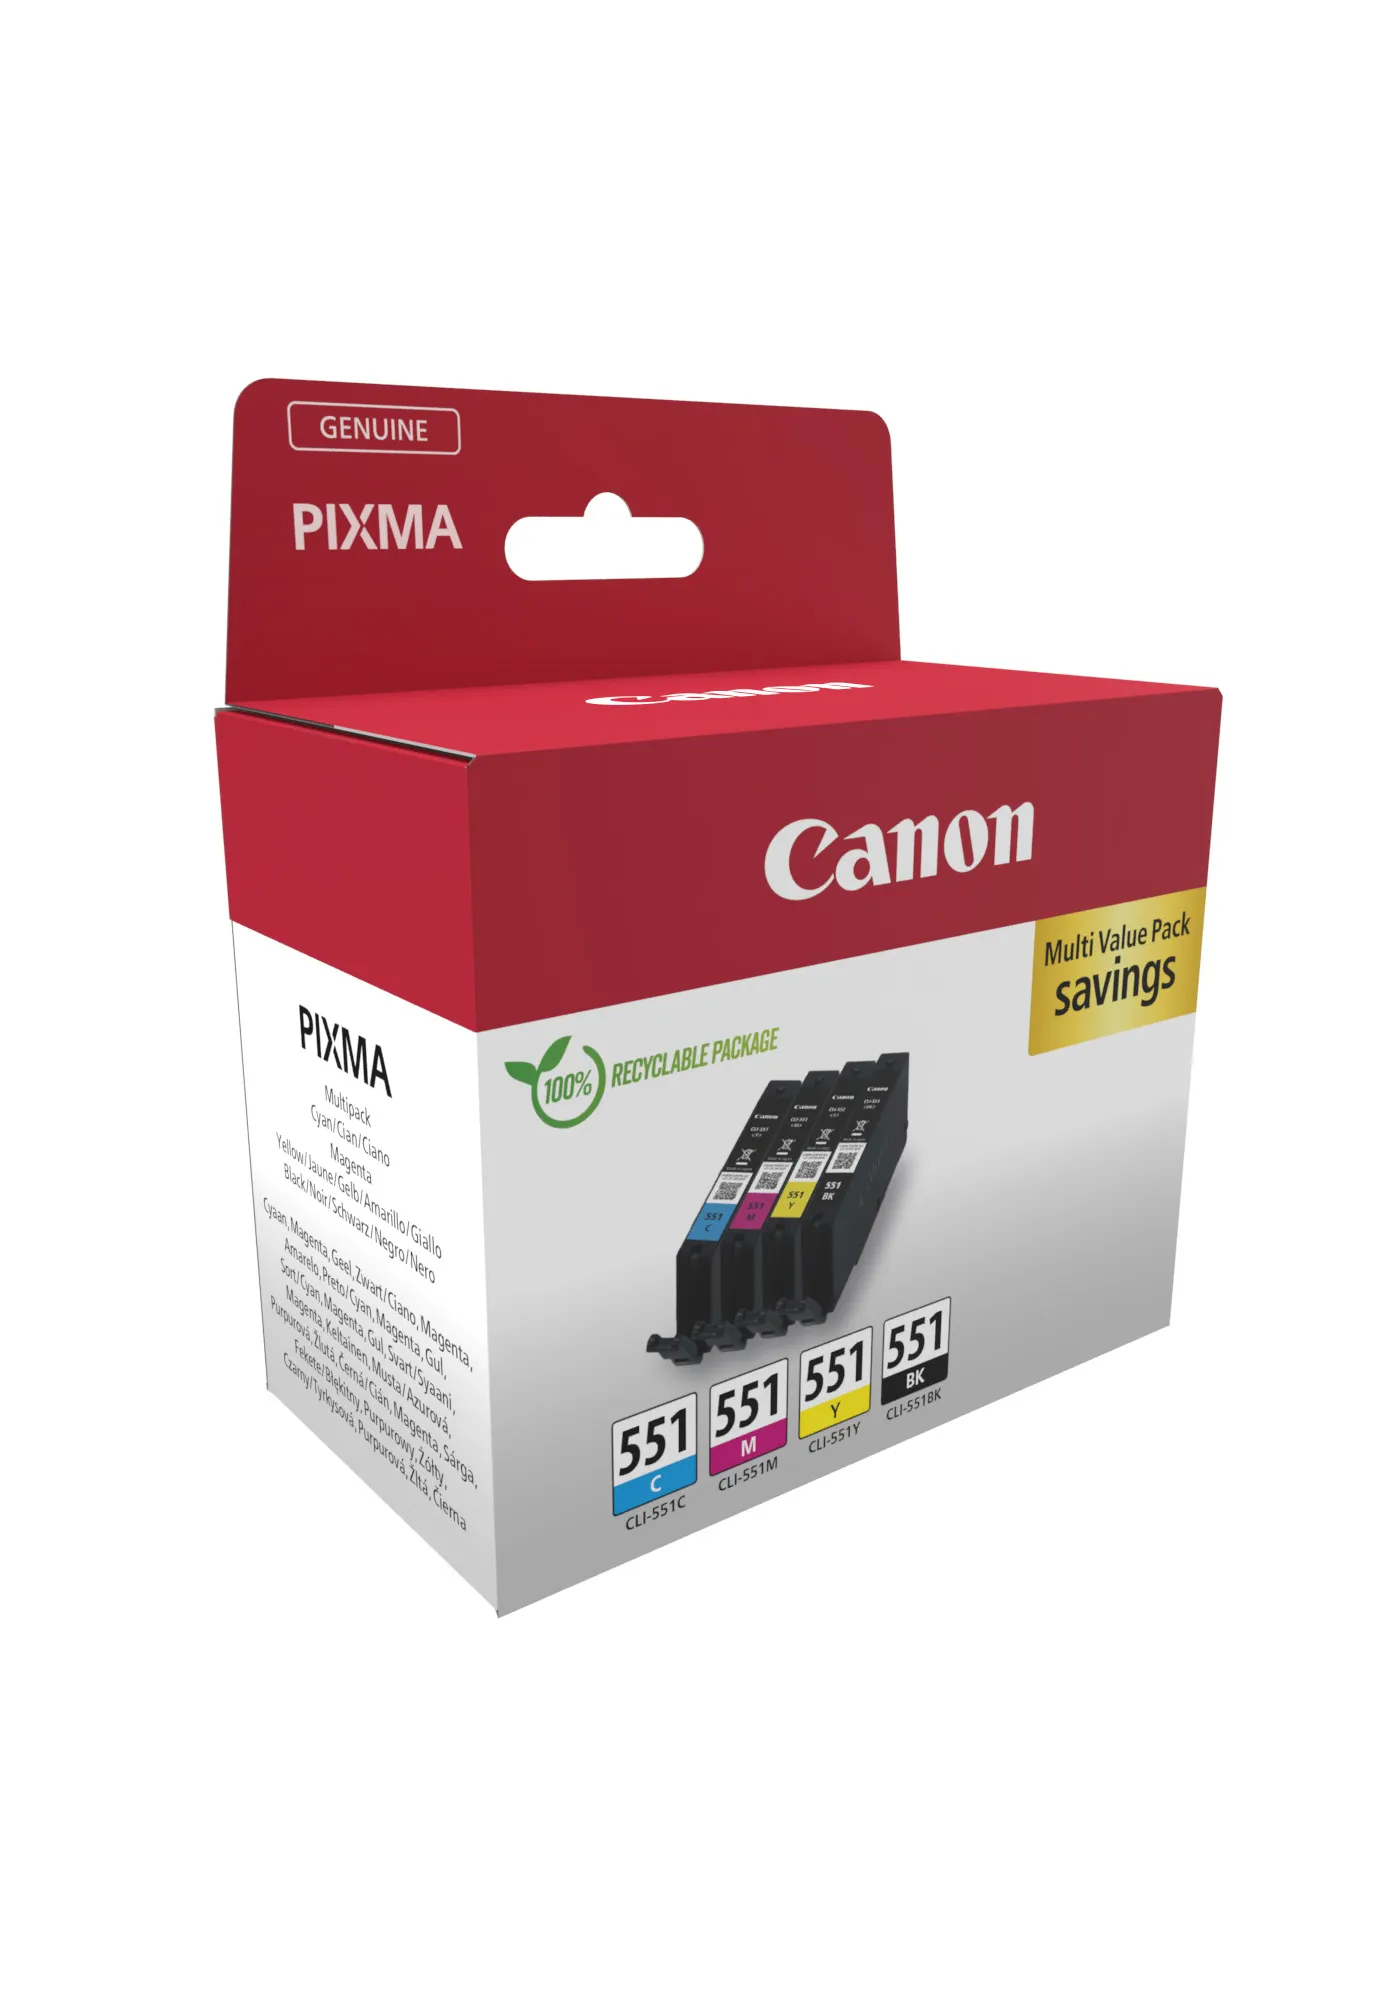 Vente Canon 6509B016 Canon au meilleur prix - visuel 2